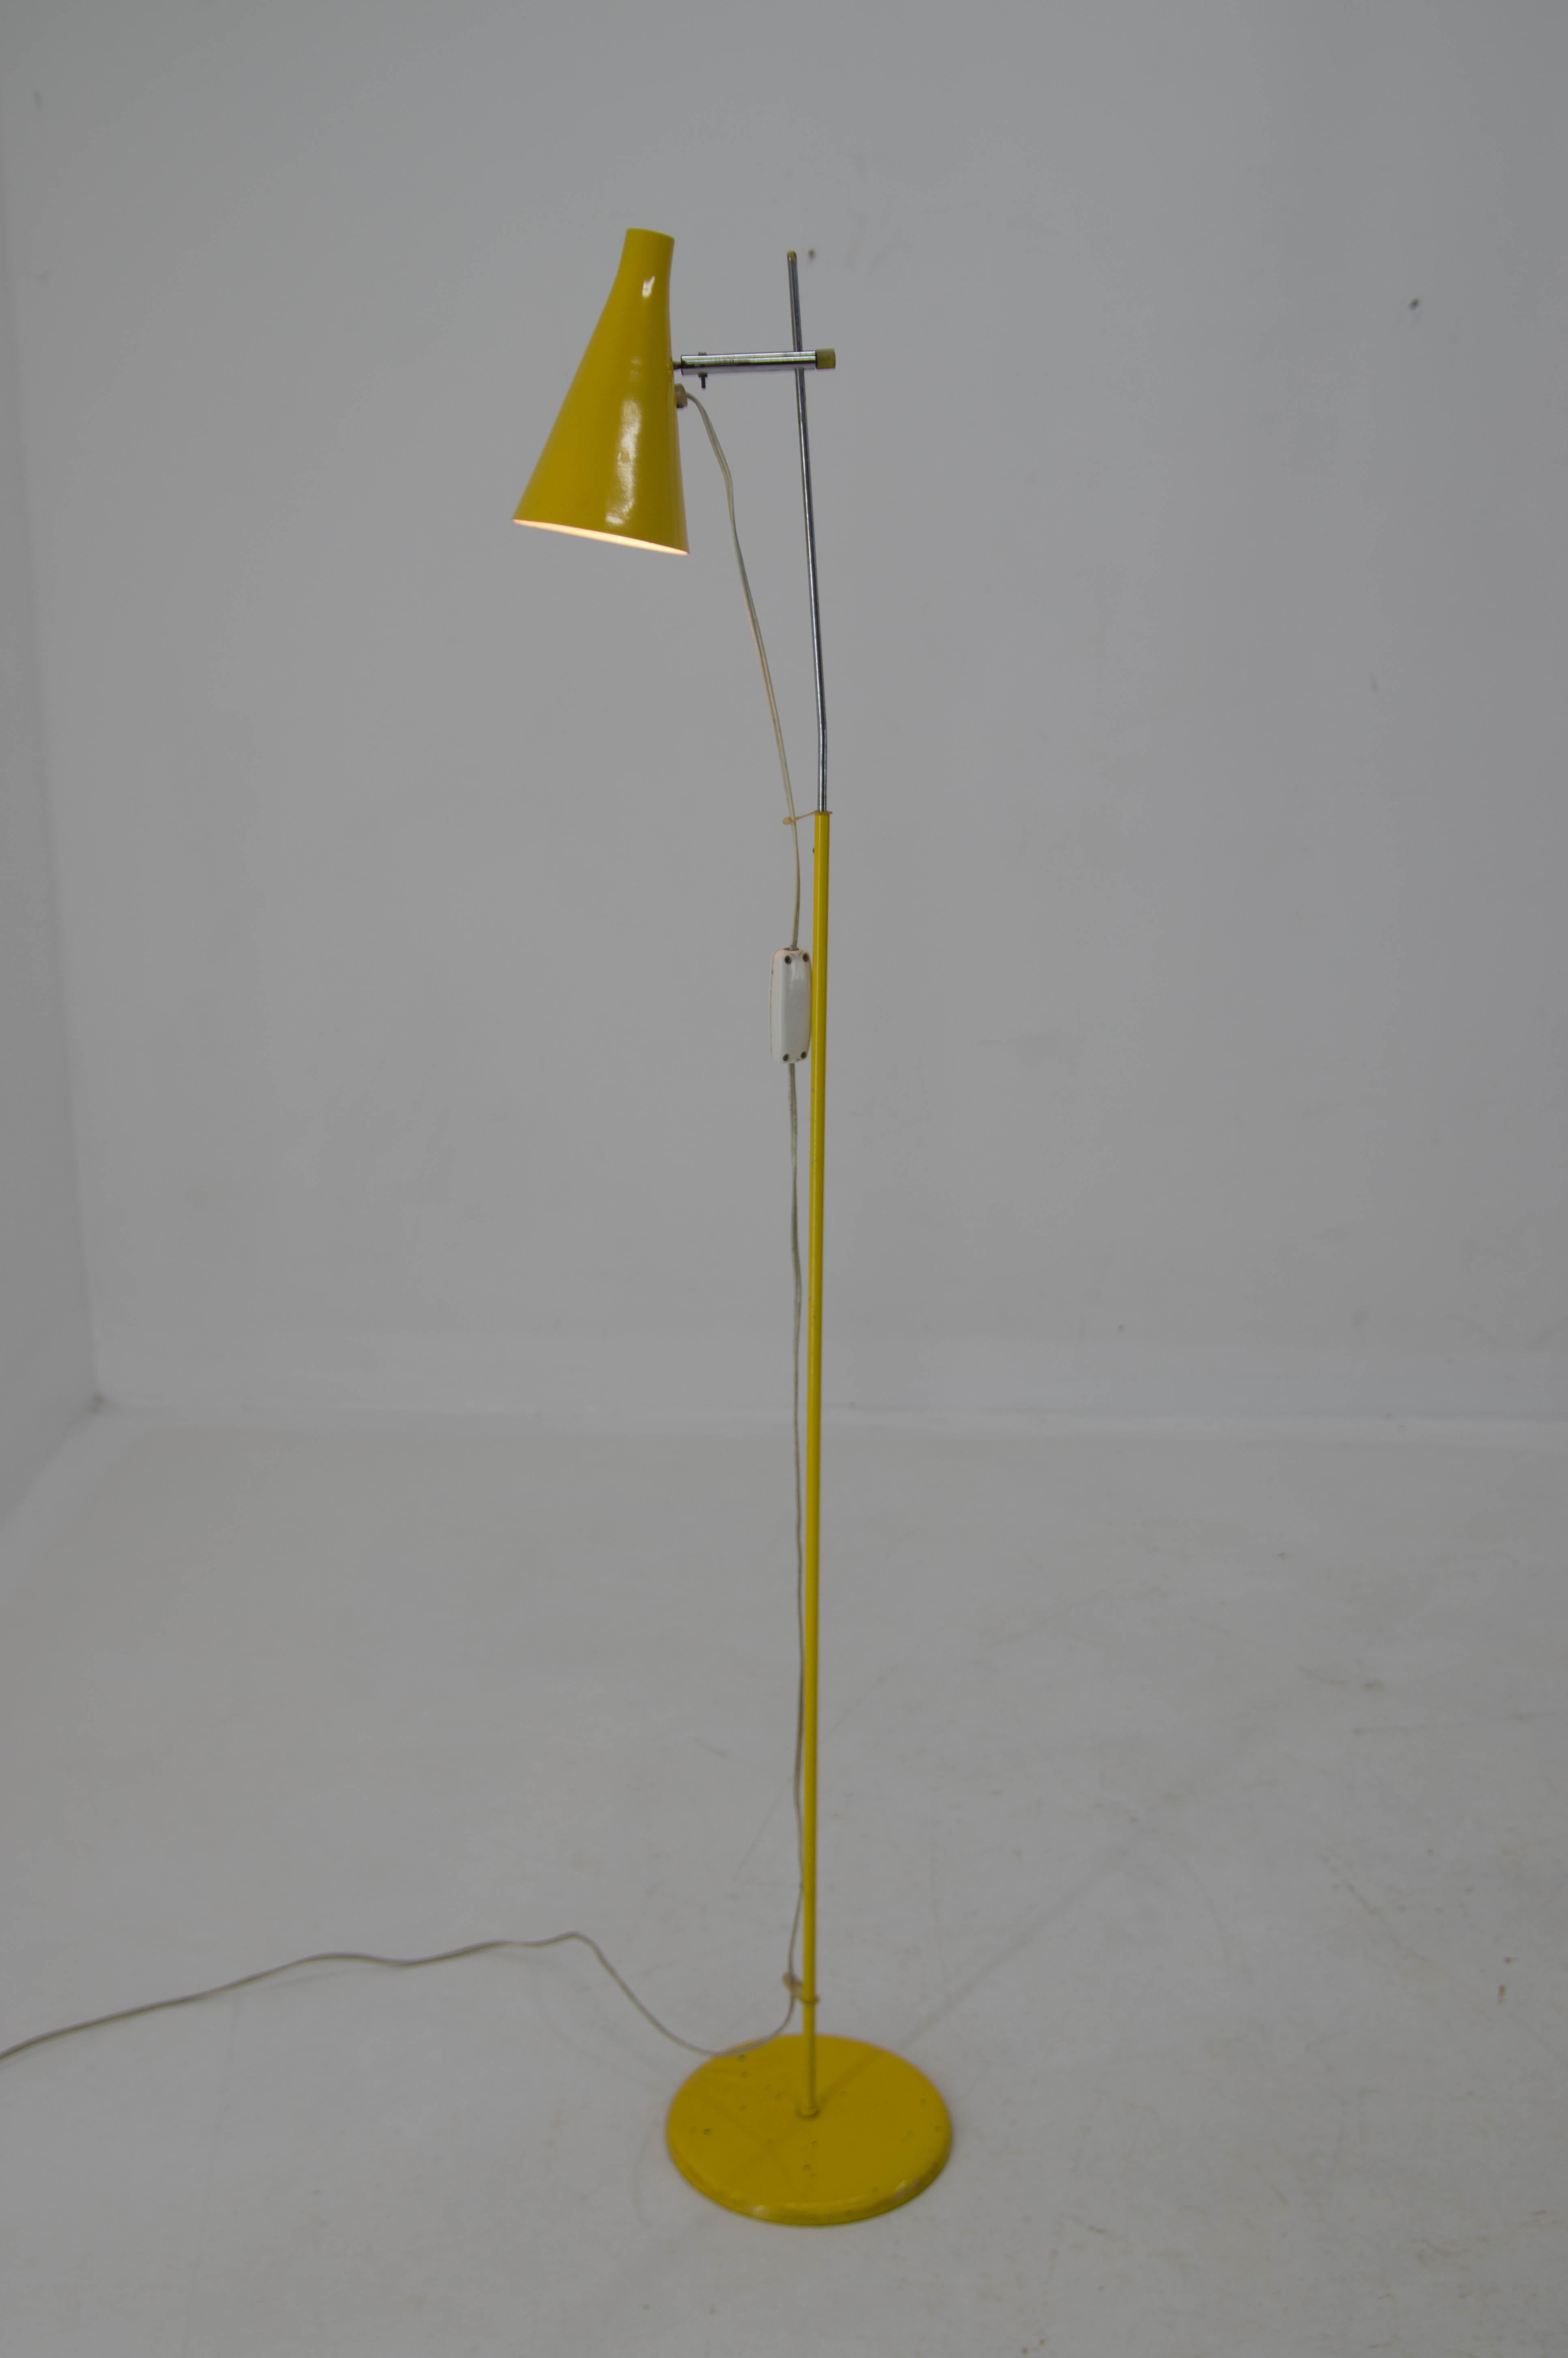 Rare type de lampadaire conçu par Josef Hurka pour Lidokov.
Abat-jour flexible et hauteur réglable.
Rewired
Ampoule E25-E27
Adaptateur pour prise américaine inclus.